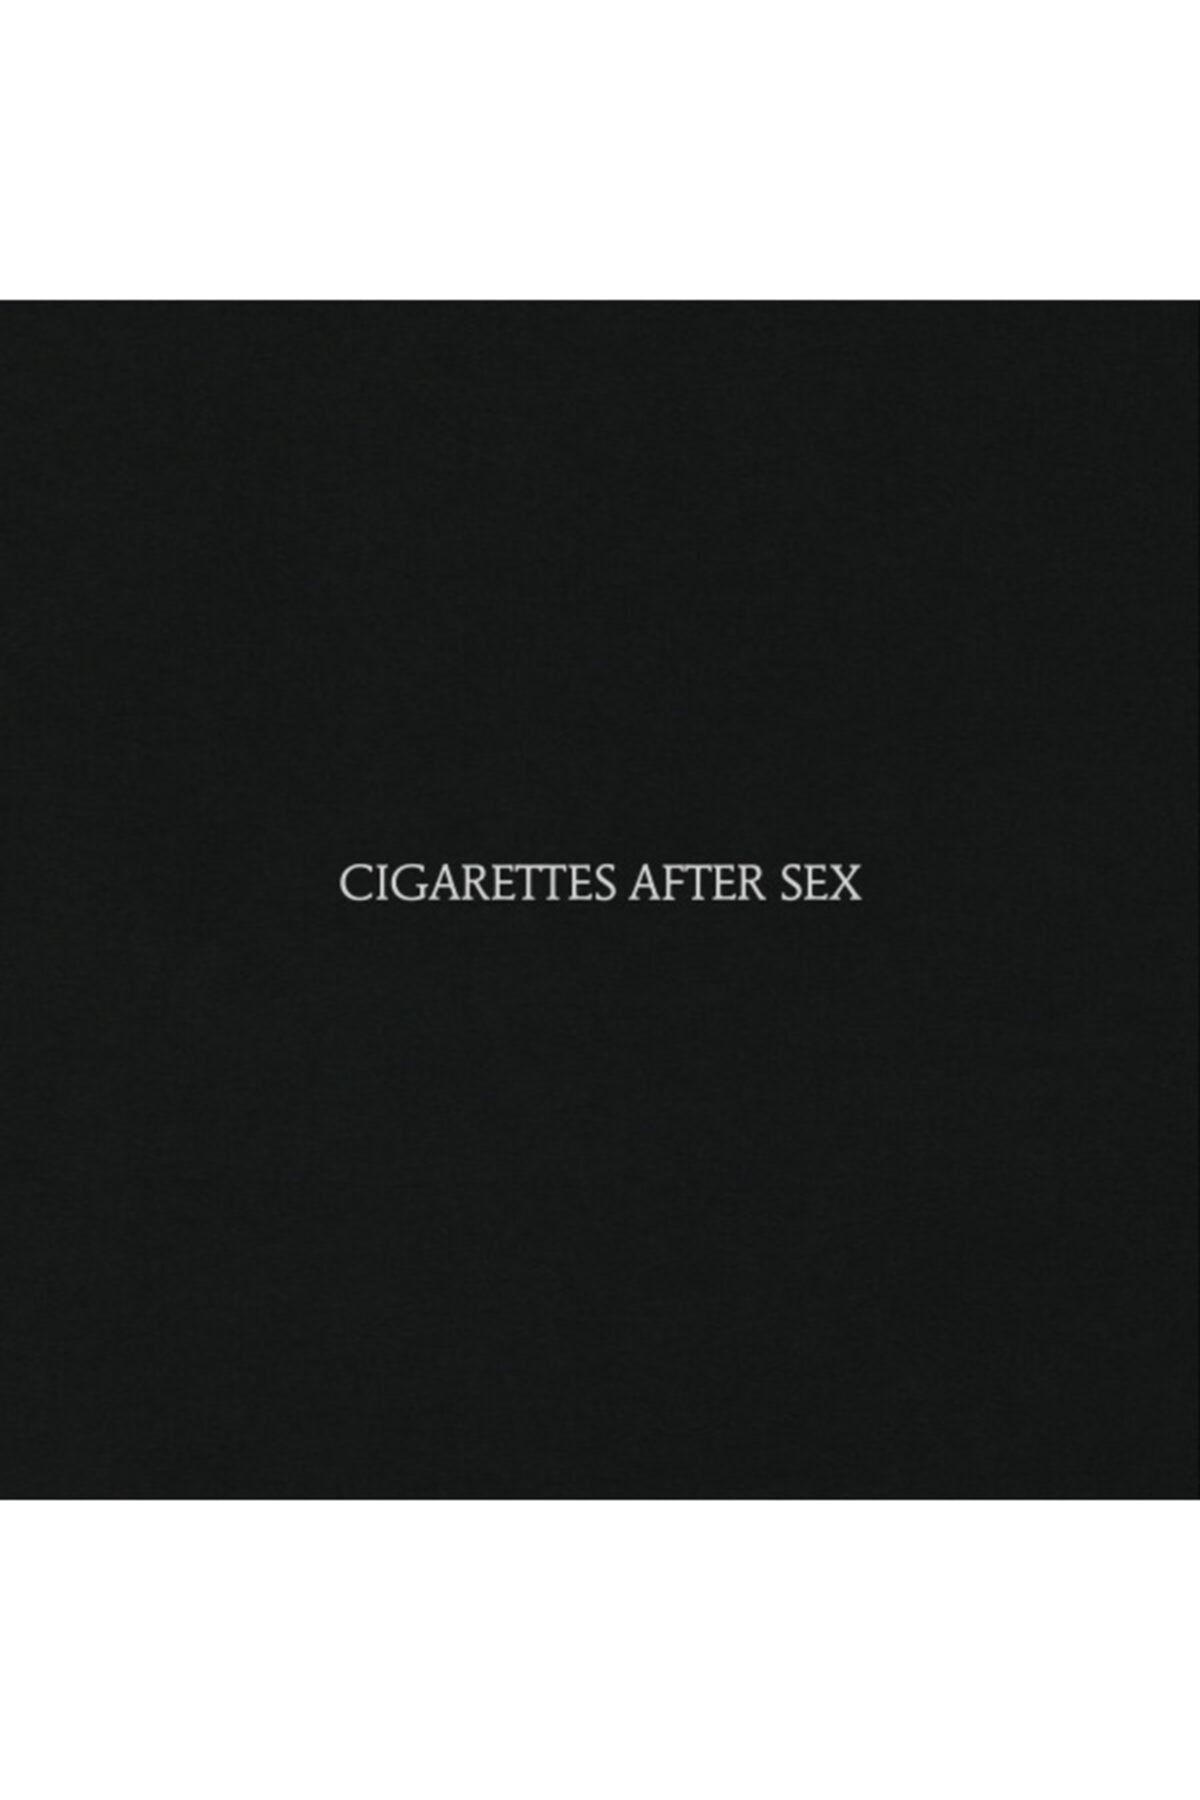 Vinylium Zone Cıgarettes After Sex Vinyl Lp Album Plak Fiyatı Yorumları Trendyol